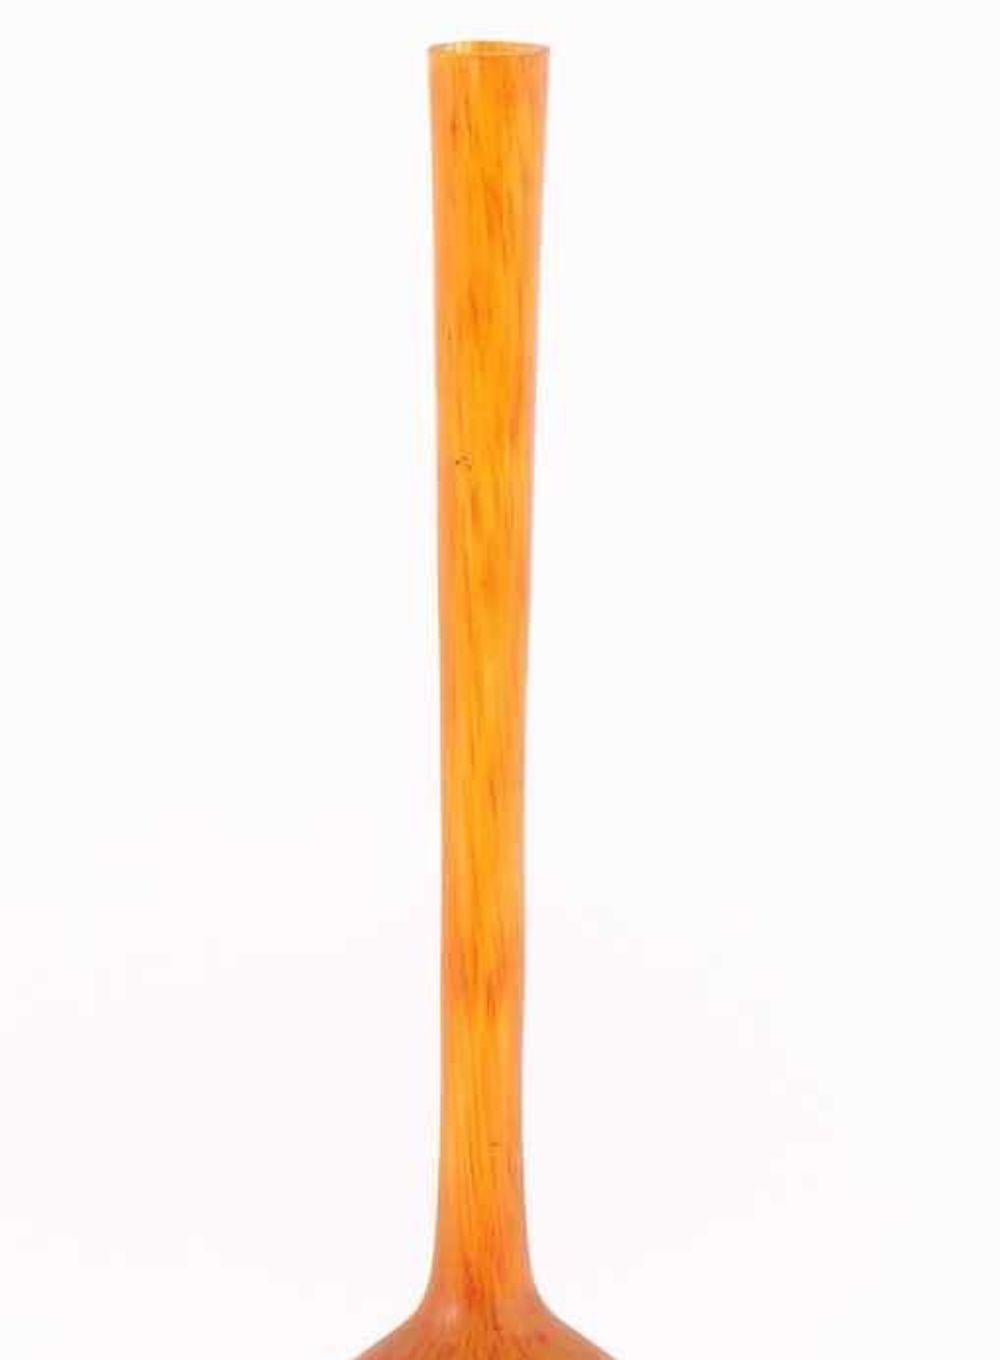 Ce vase Berluze est un objet décoratif original réalisé dans les années 1920.

Vase en verre de couleur orange appelé Berluze (vase à long col de forme persane) réalisé par André Delatte qui a fondé une petite verrerie à Jarville, près de Nancy,